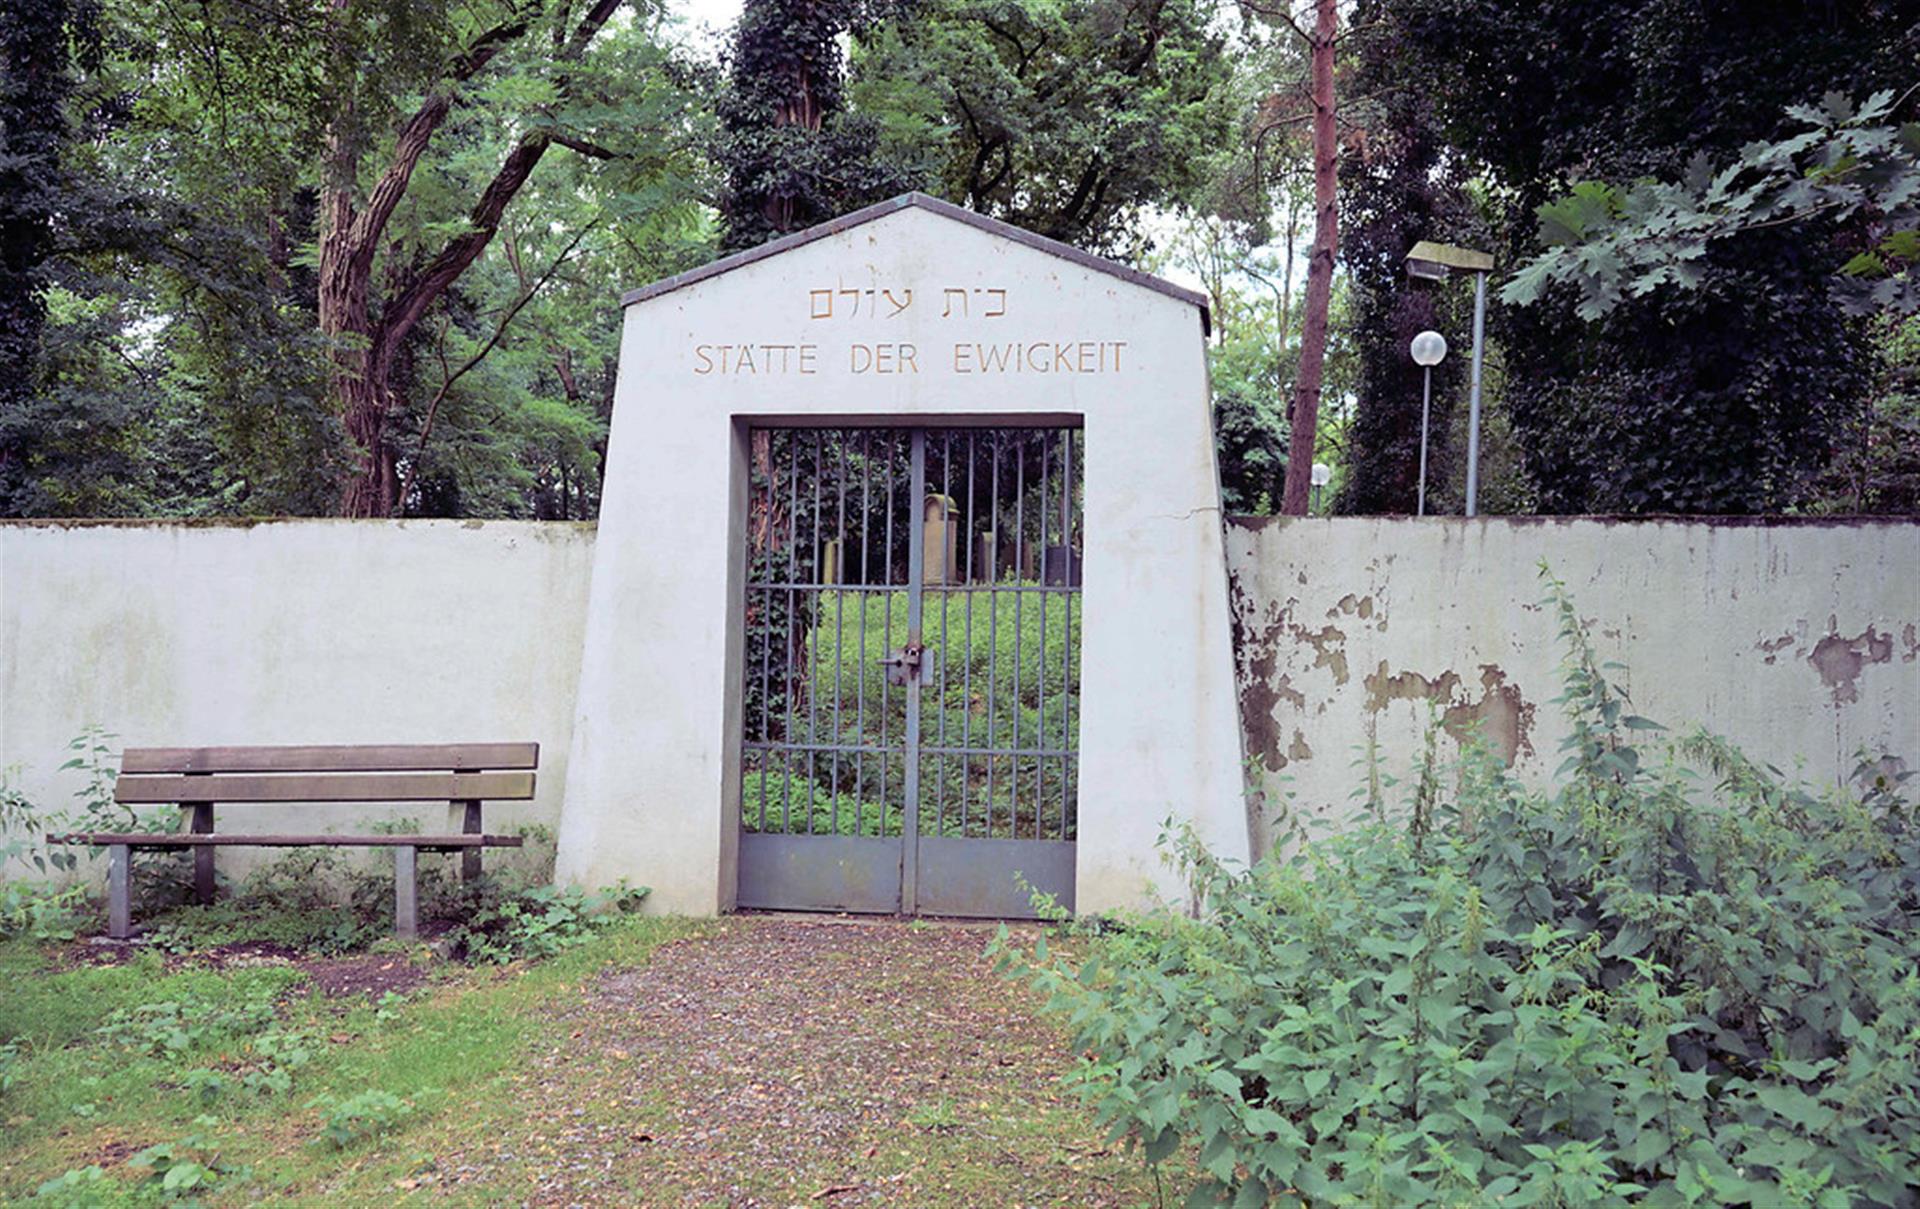 Eingangstor zum Jüdischen Friedhof in Dormagen-Zons (2017). Über dem Portal steht unter hebräischen Schriftzeichen "Stätte der Ewigkeit". &copy; Kuhlmann, Volker